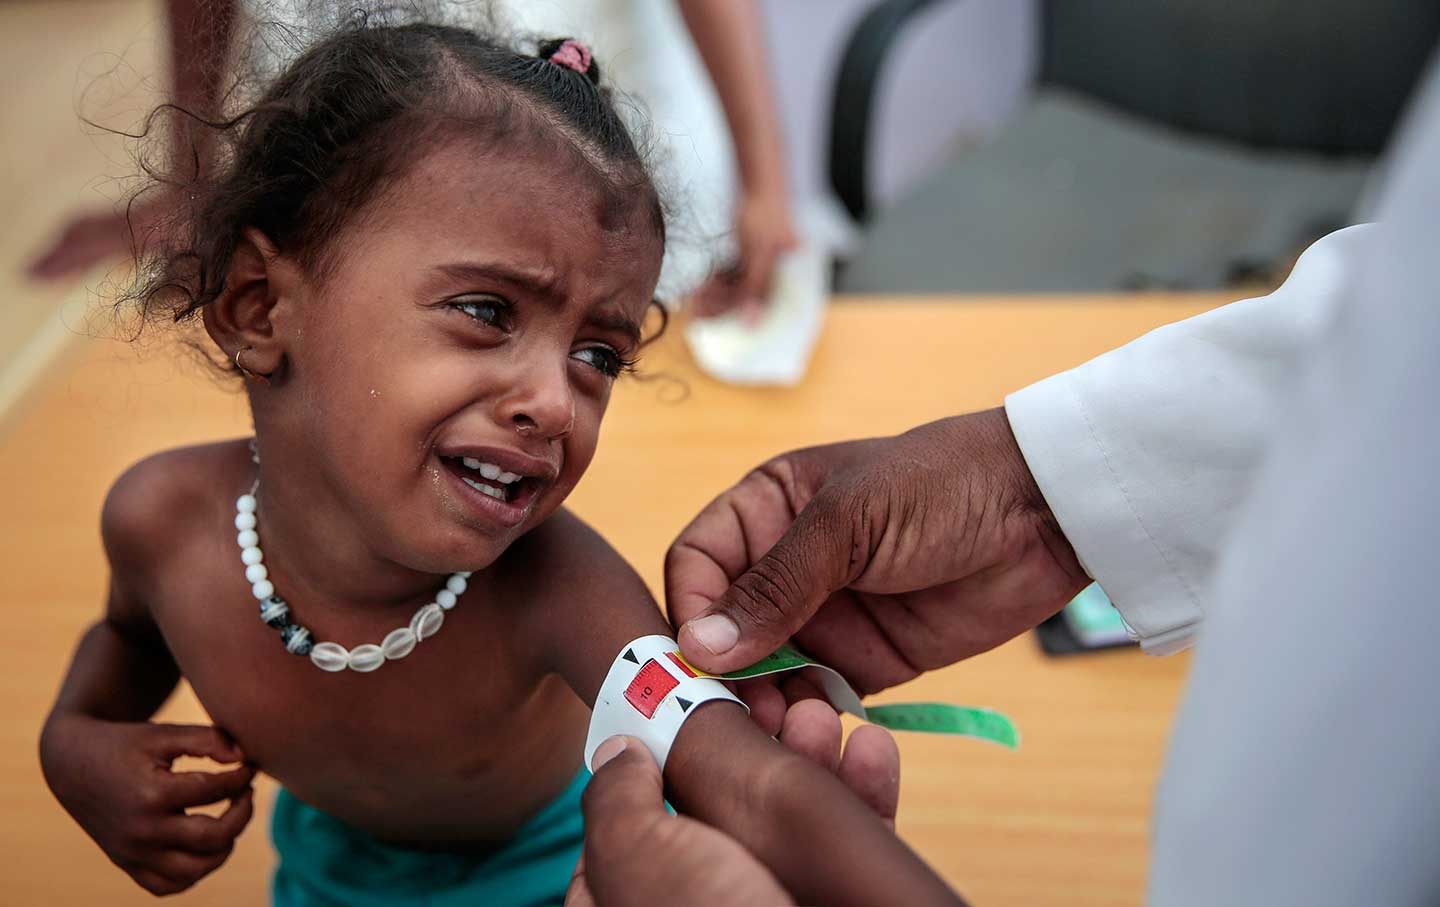 Yemen child crying